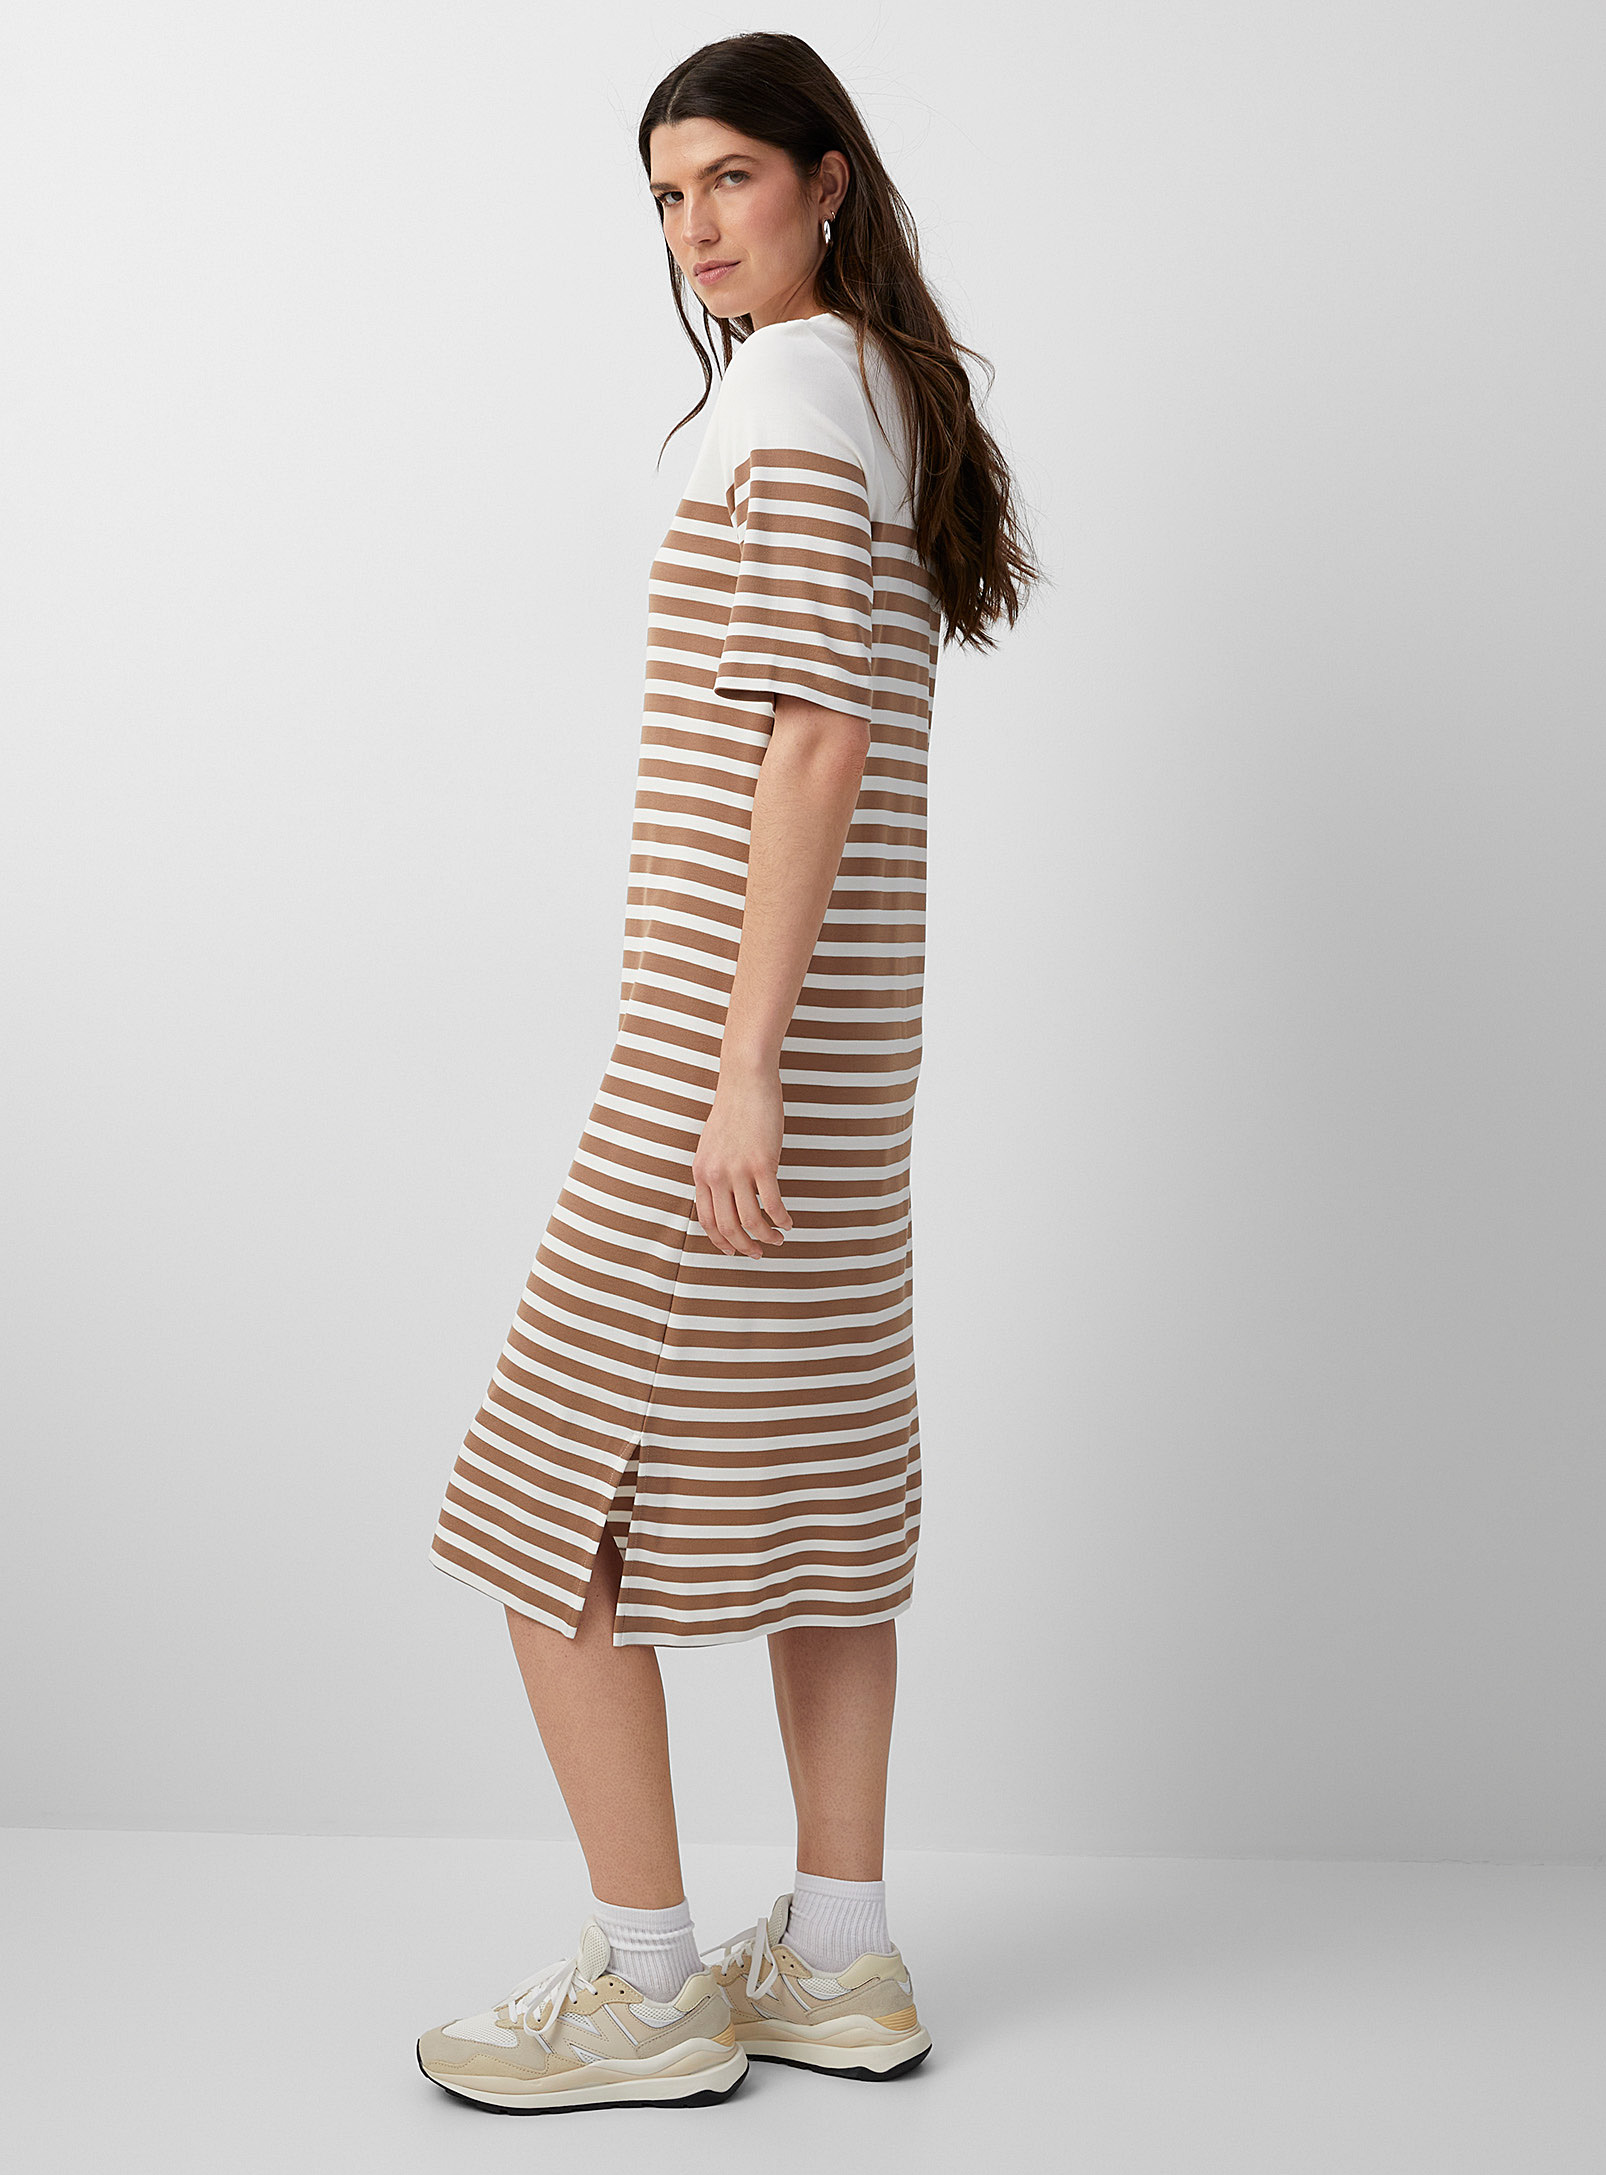 Contemporaine Two-tone Stripe Jersey Dress In Cream Beige